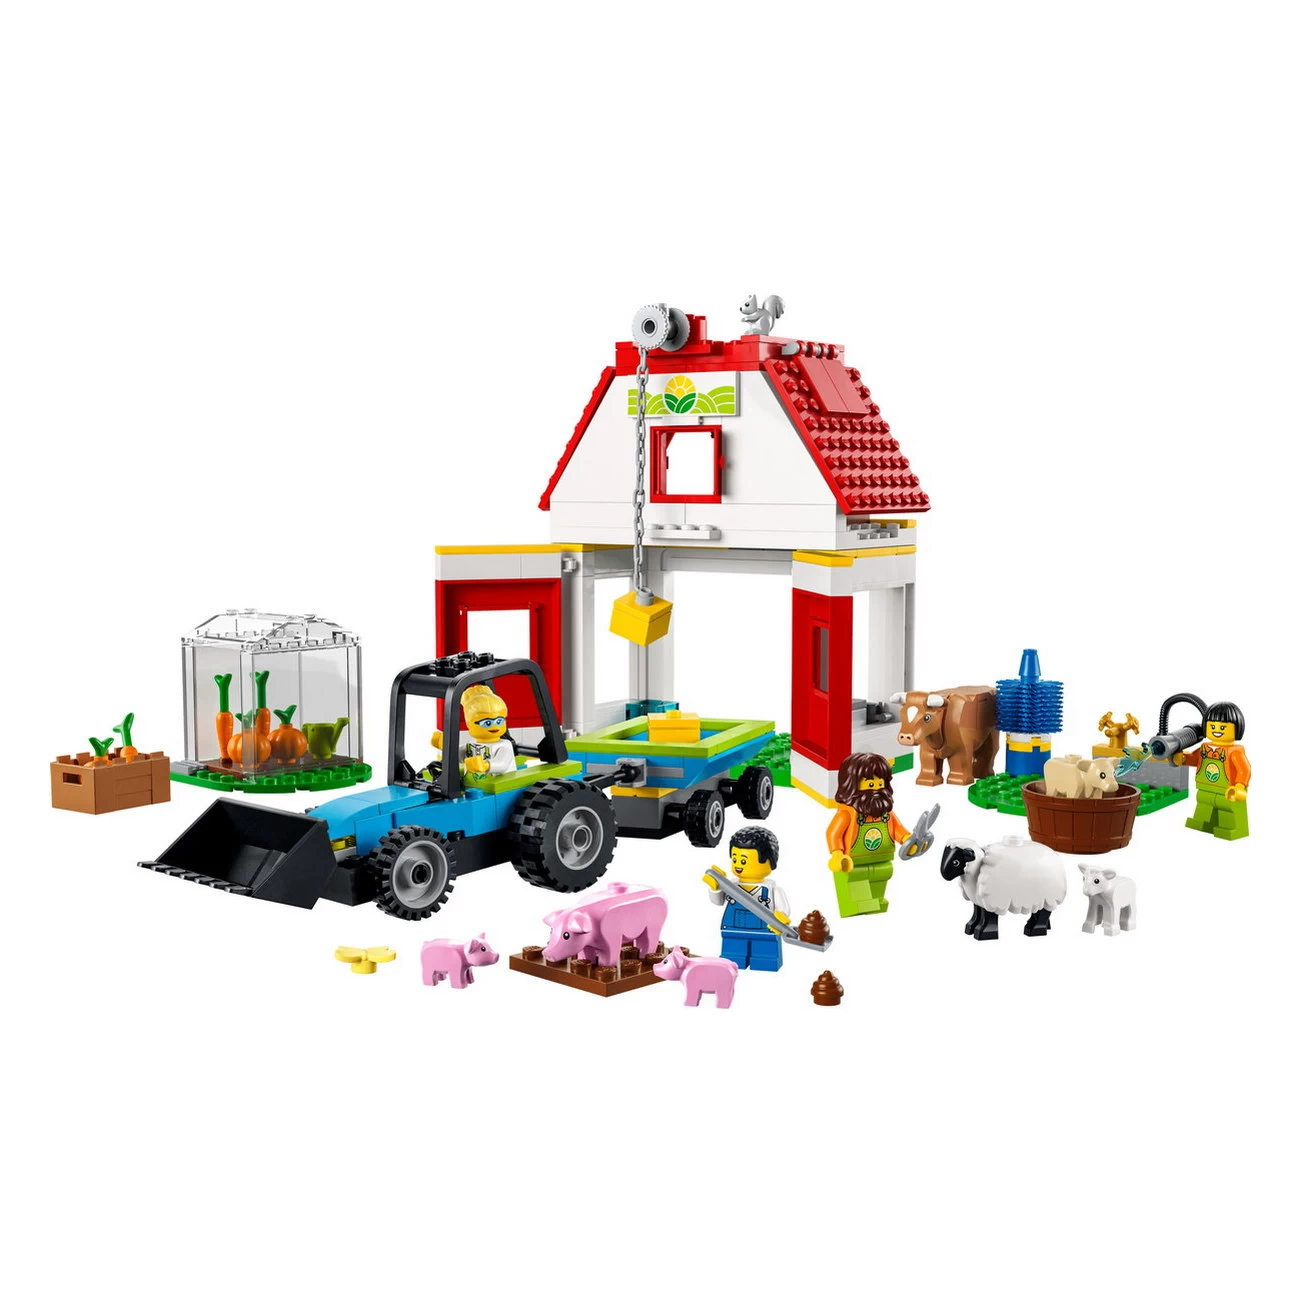 LEGO City 60346 - Bauernhof mit Tieren - City Farm